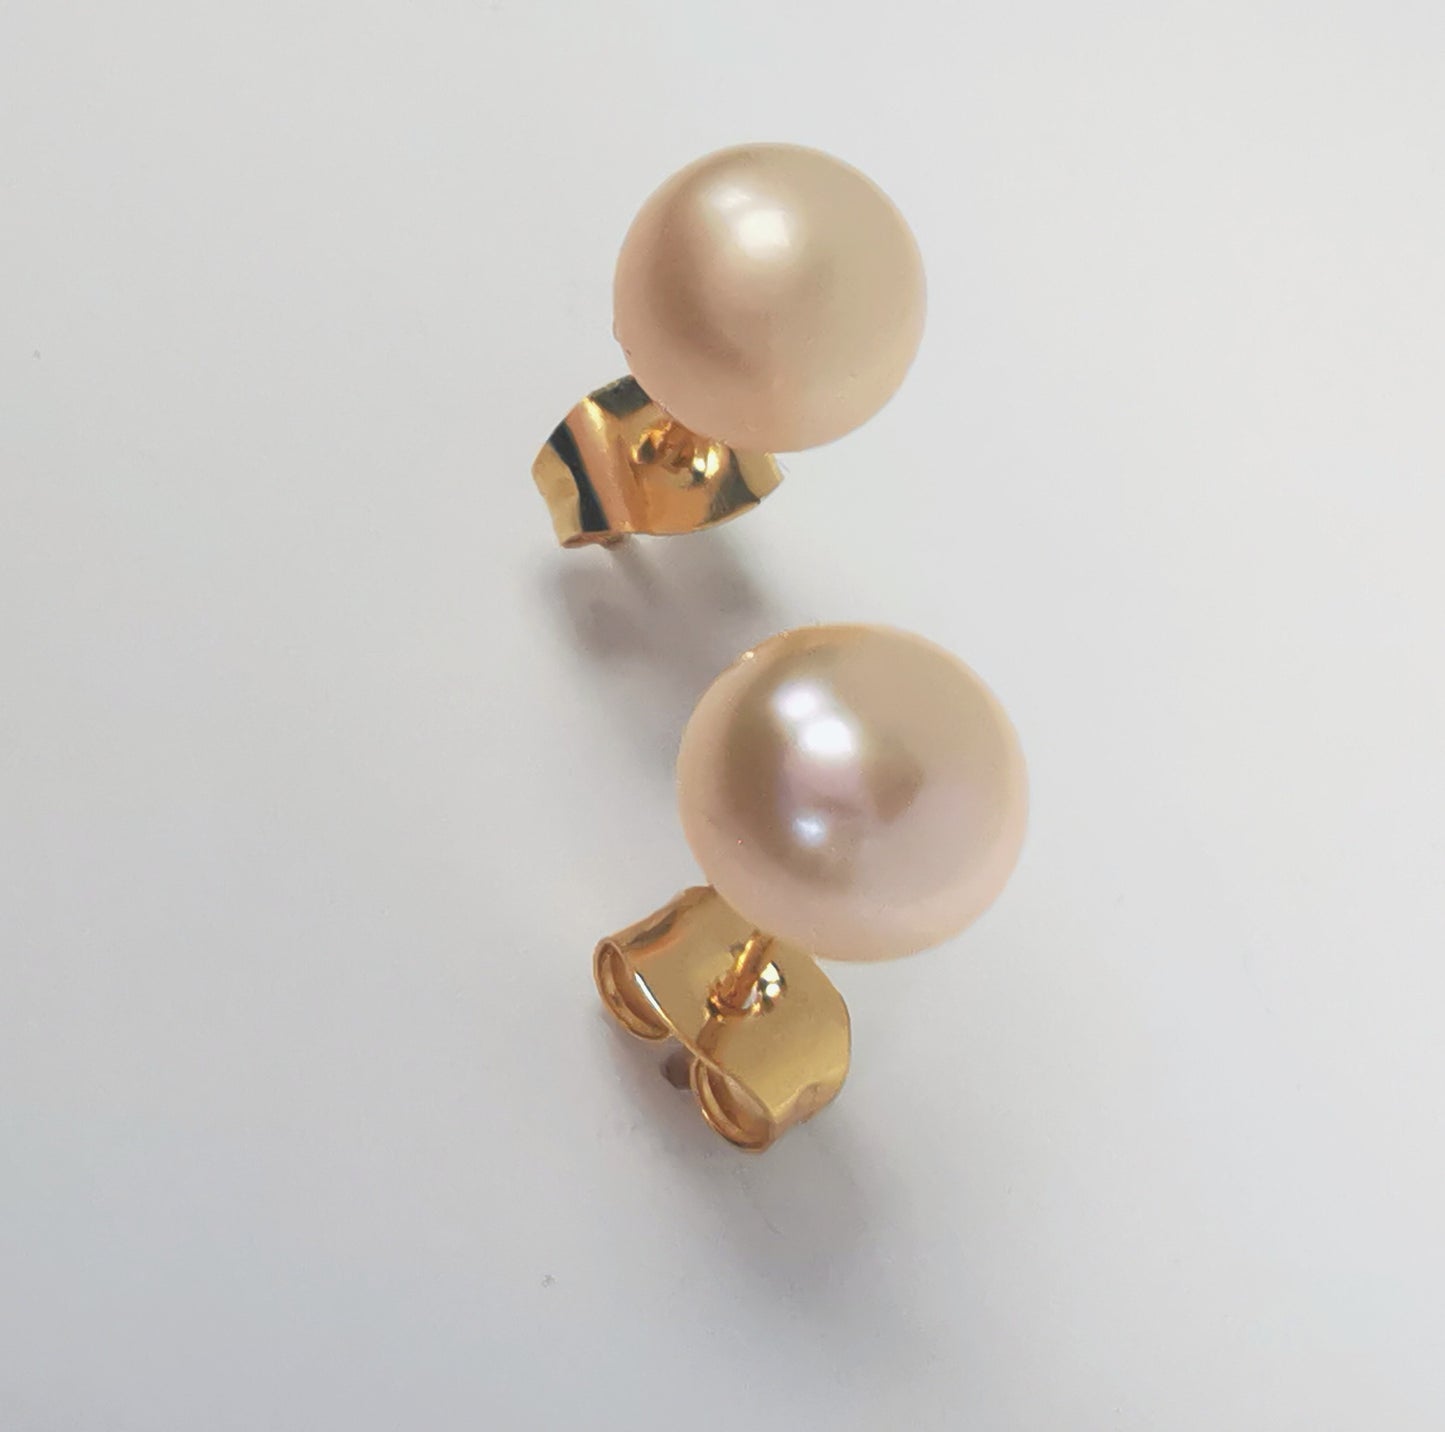 Boucles d'oreilles perles de culture rose 7mm sur clous plaqués or. Présentées l'une au dessus de l'autre plantées sur un fond blanc, inclinées vers l'arrière. Vue en très gros plan de face.